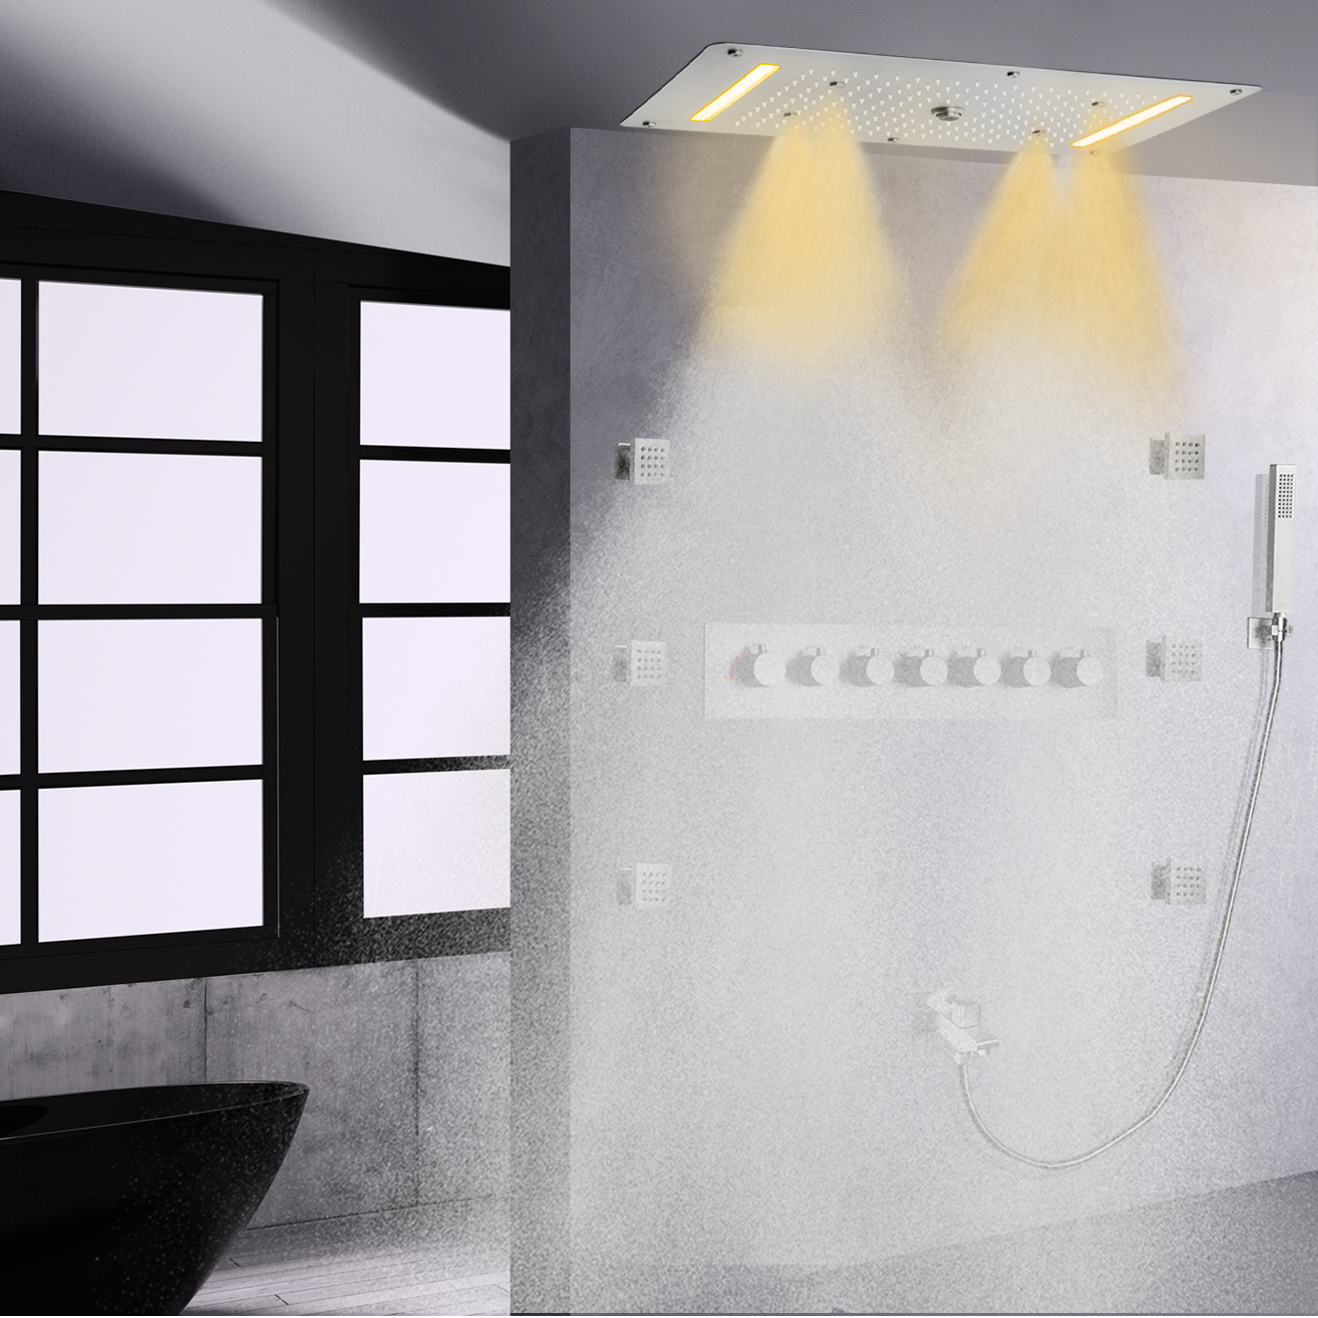 Sistema de cabezal de ducha multifunción grande de níquel cepillado, Panel mezclador de ducha termostático montado en la pared, lluvia en cascada